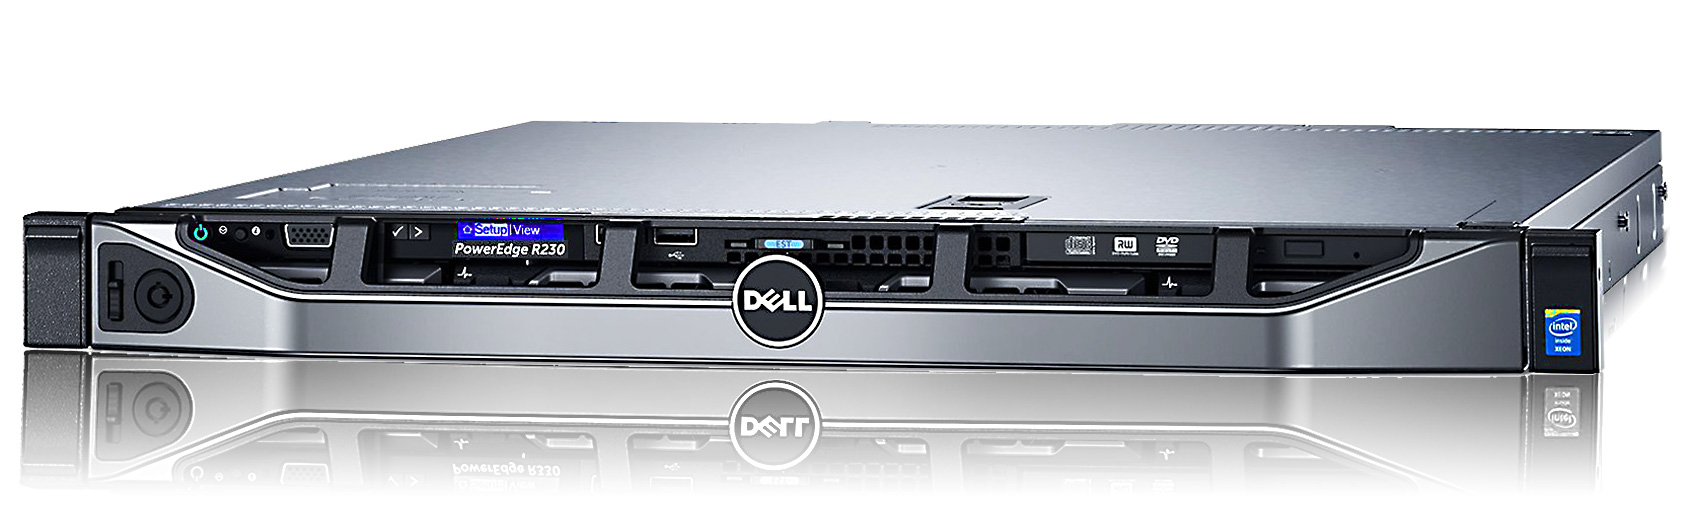 Сервер Dell EMC PowerEdge R220 начального уровня 1U Rack Server R220 intel xeon e3 rackmount dell servidor серверные решения 1с серверы купить цена